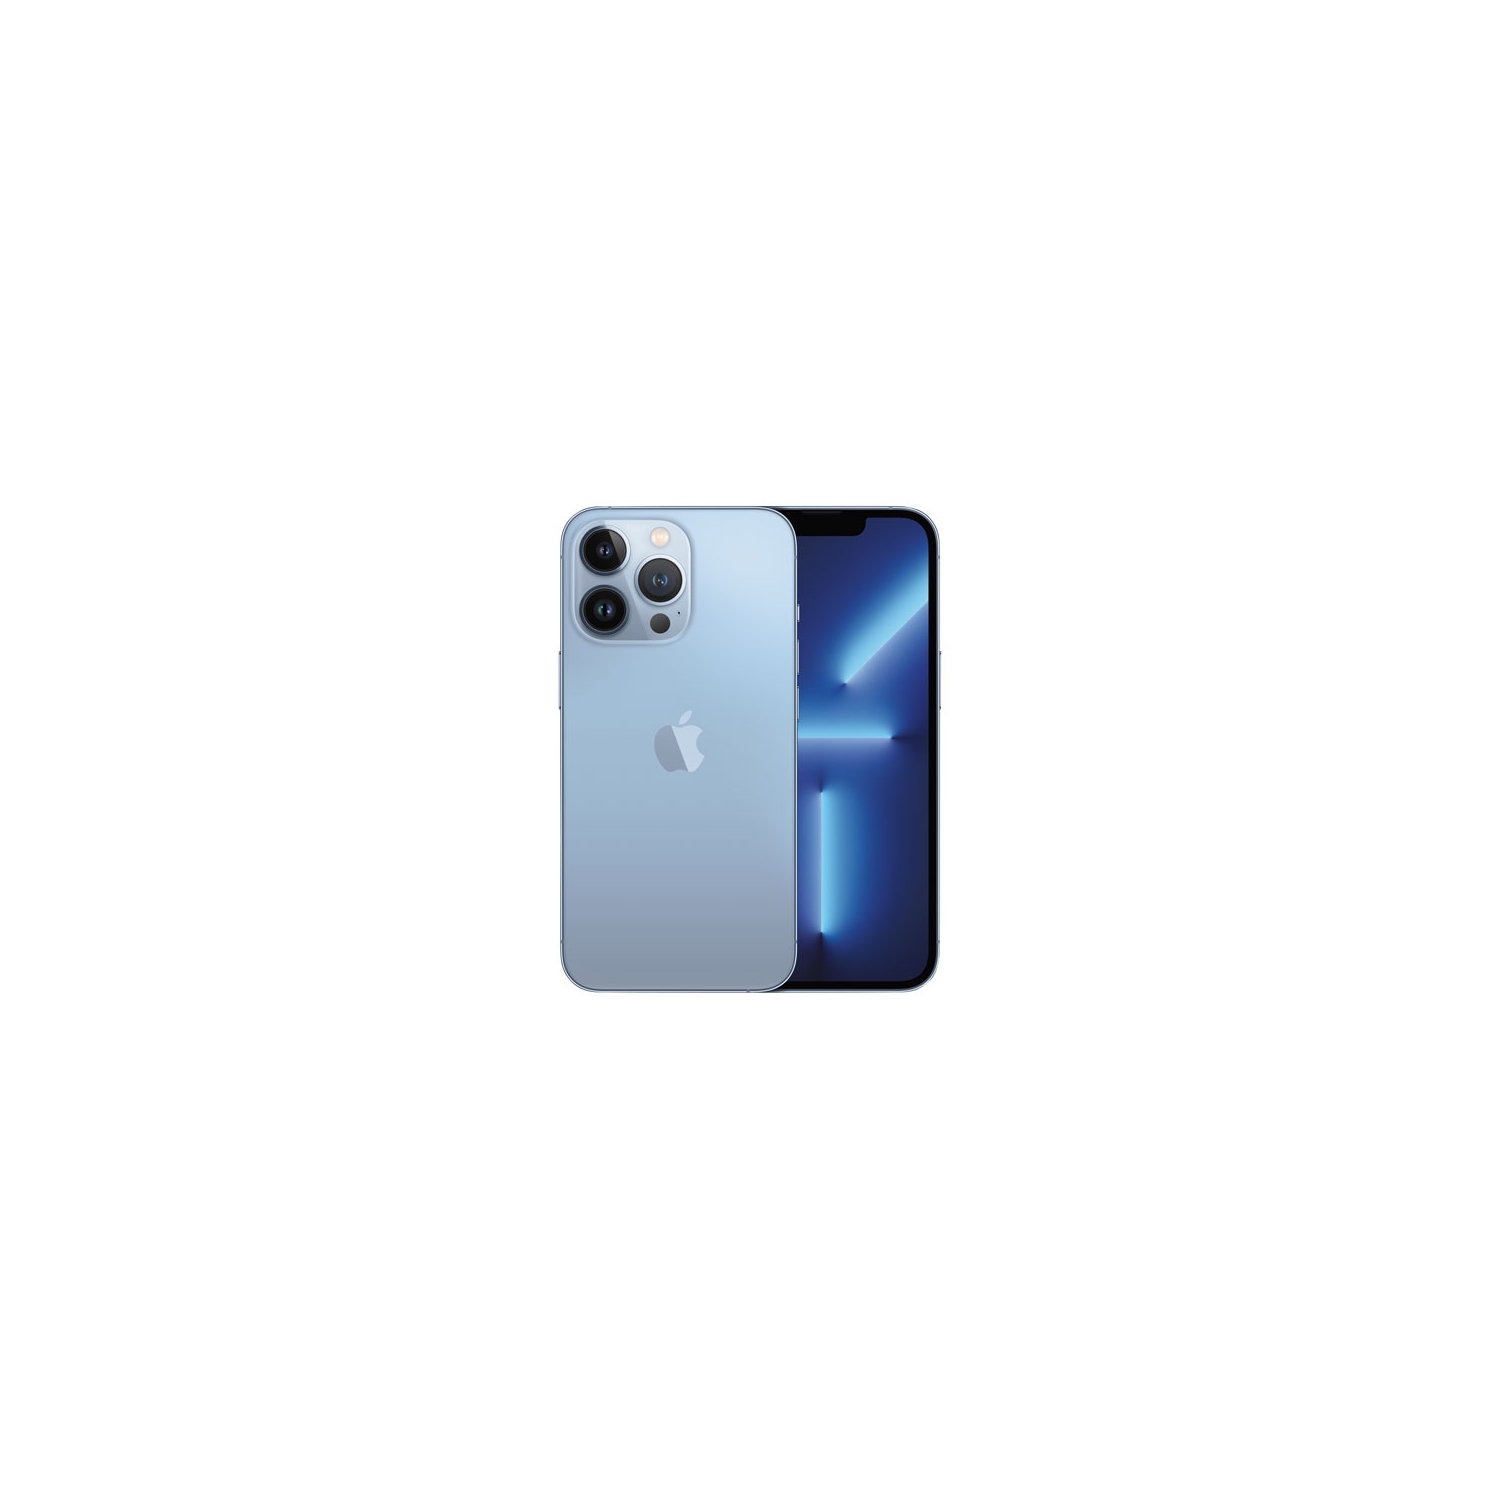 Apple iPhone 13 Pro 128GB - Sierra Blue - Unlocked - Open Box